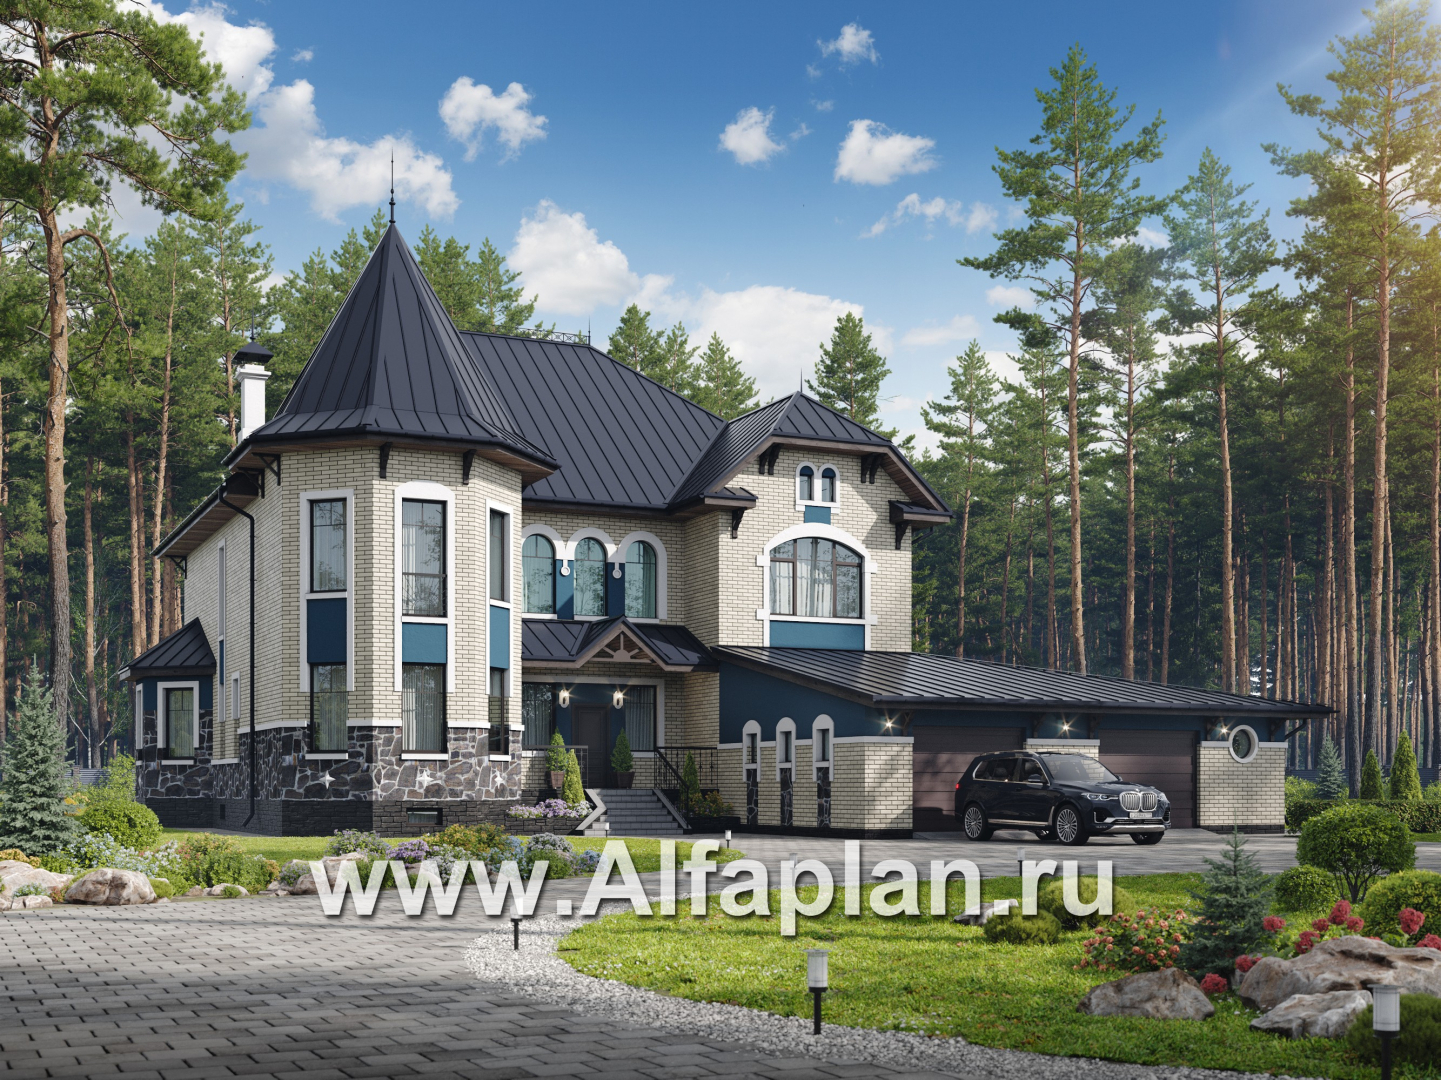 Превью проекта ««Дворянское гнездо» - проект двухэтажного дома,  с двусветной гостиной и бассейном, семейный особняк в русском стиле»